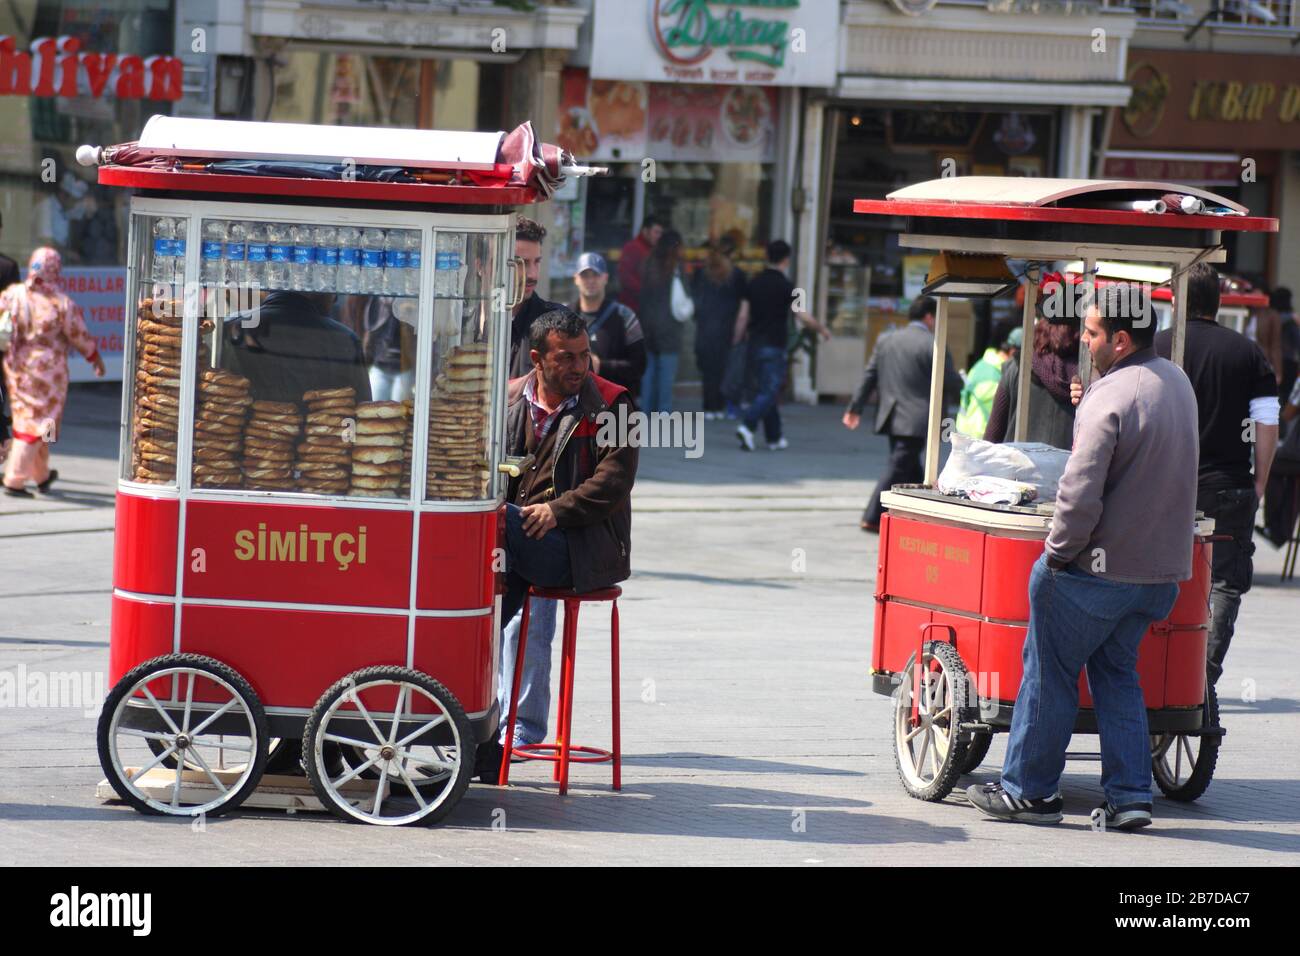 Vendeurs vendant simit, bagels, petits pains, rue Istiklal, Istanbul, Turquie Banque D'Images